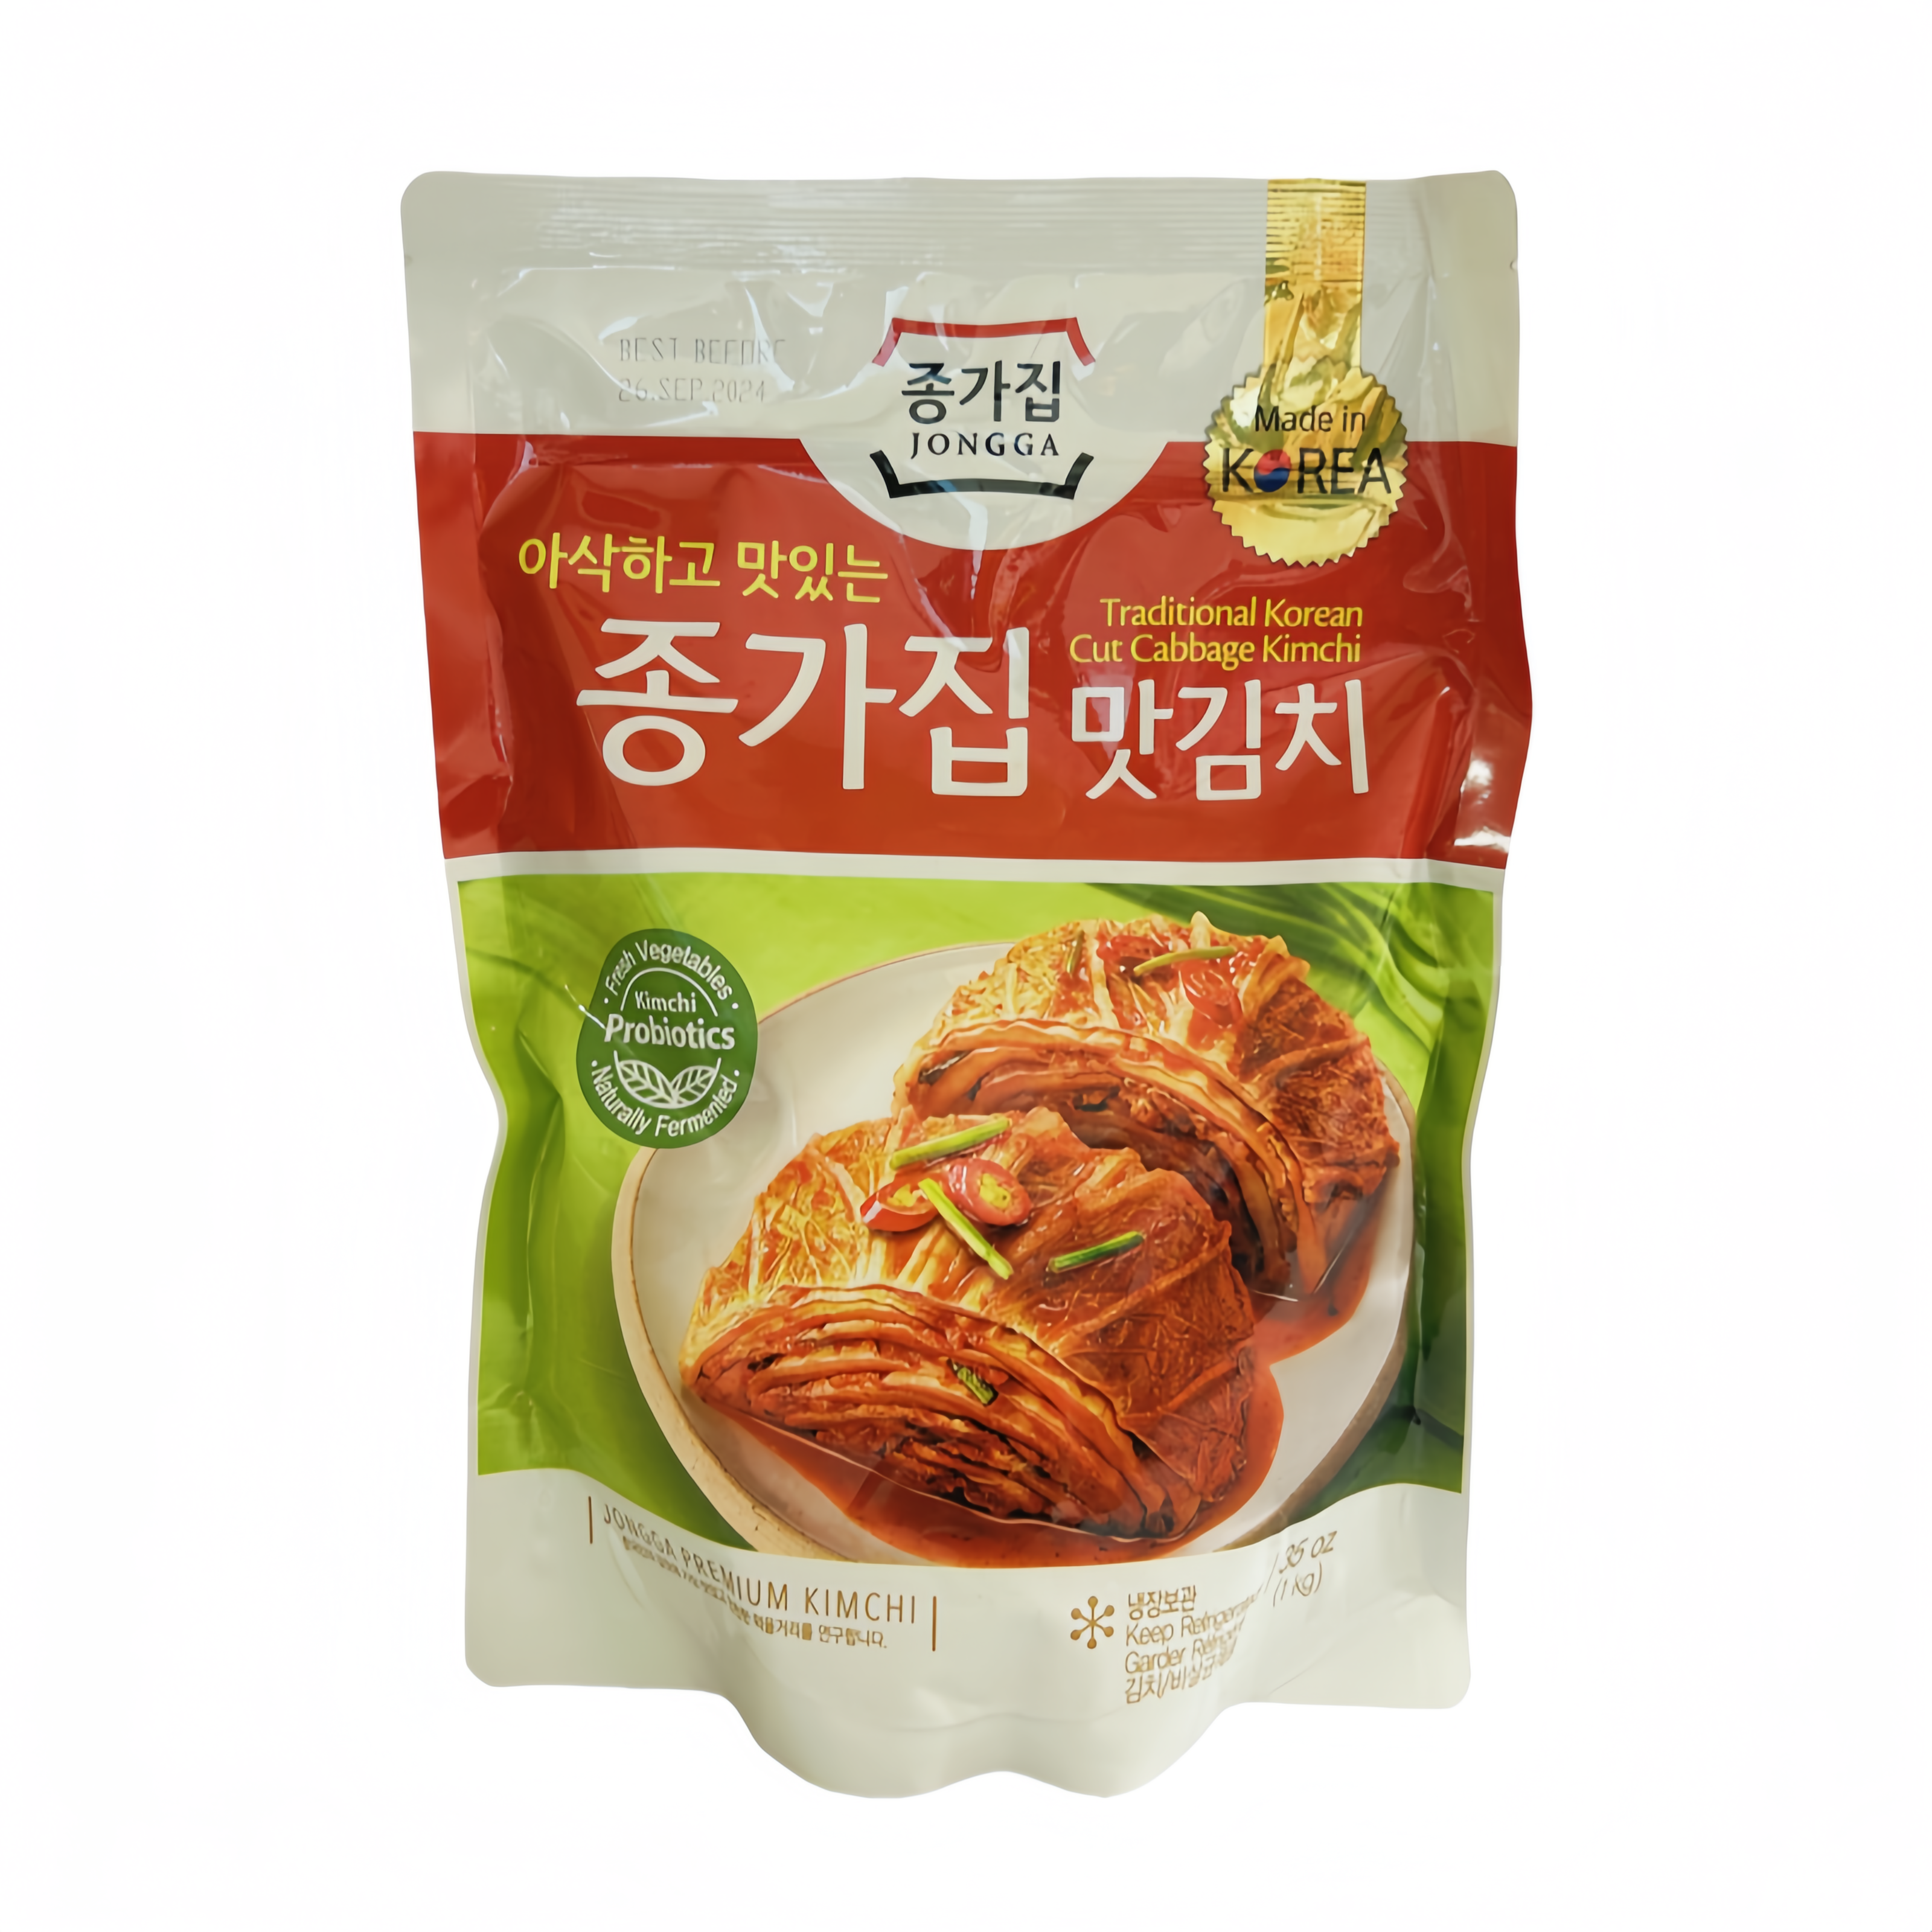 大白菜泡菜/半切 1kg Jongga 韩国